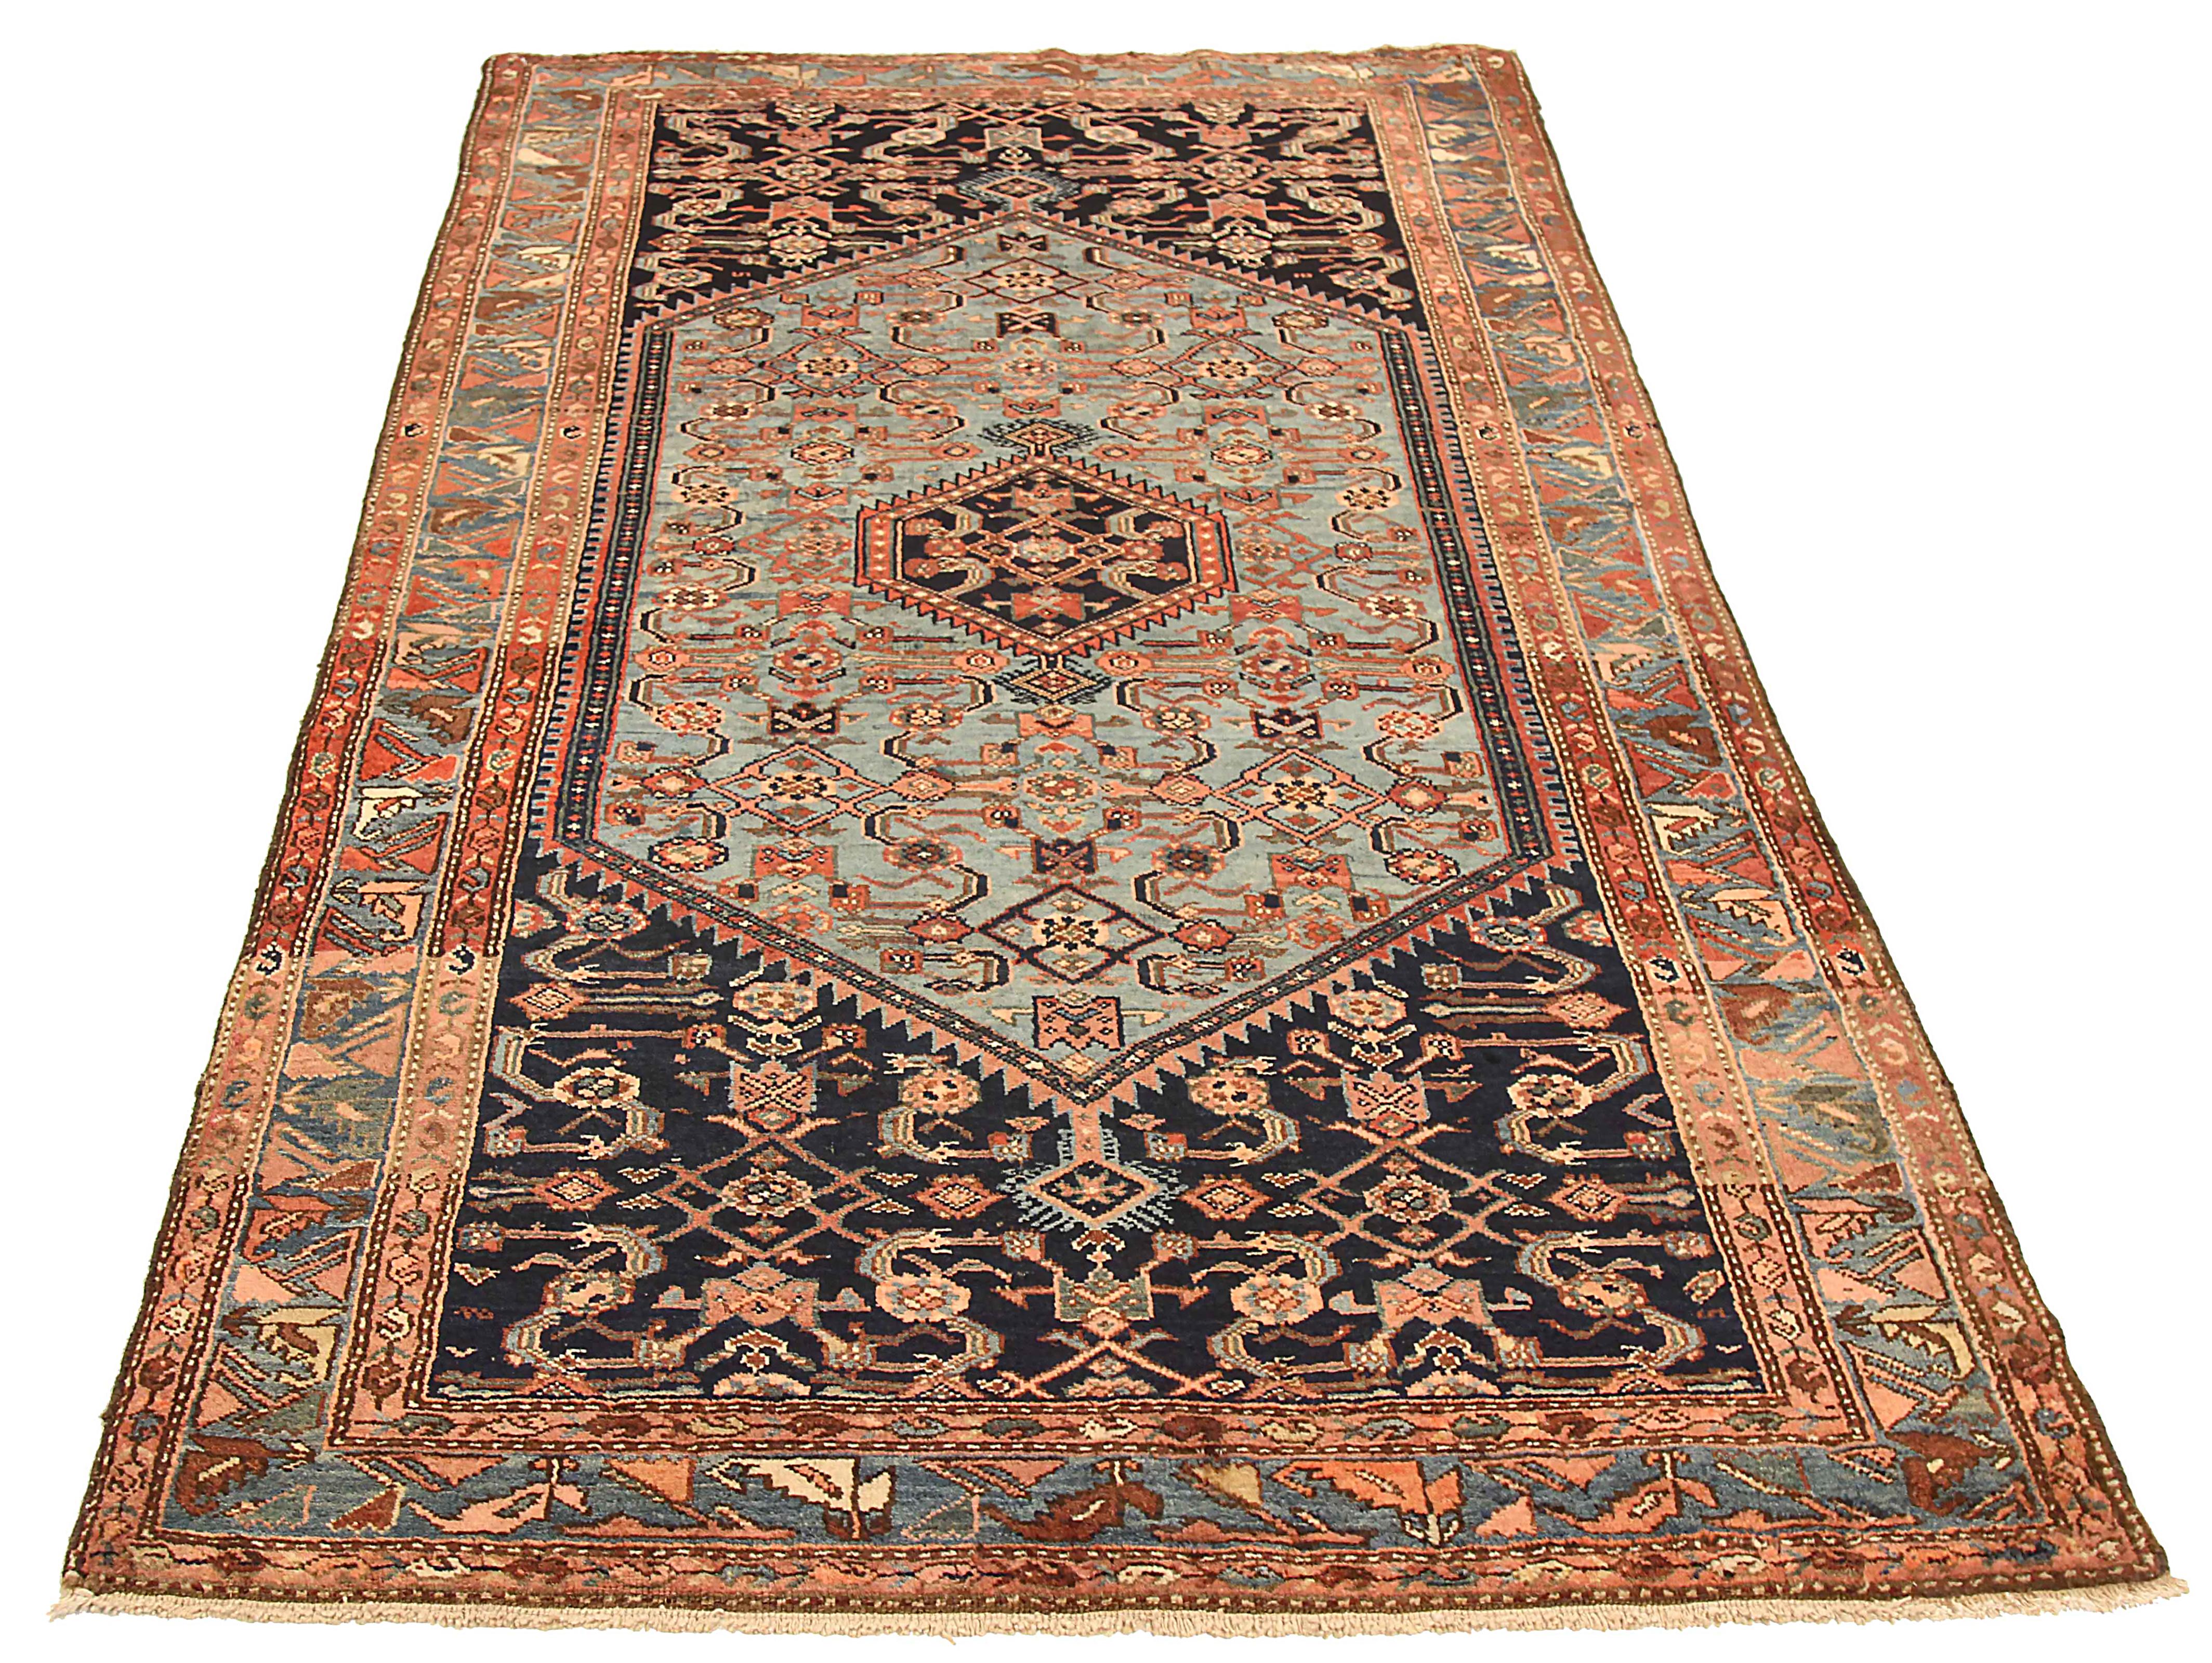 Antiker persischer Teppich, handgewebt aus feinster Schafswolle. Es ist mit natürlichen pflanzlichen Farbstoffen gefärbt, die für Menschen und Haustiere sicher sind. Es handelt sich um ein traditionelles Bakhtiar-Design, das von erfahrenen